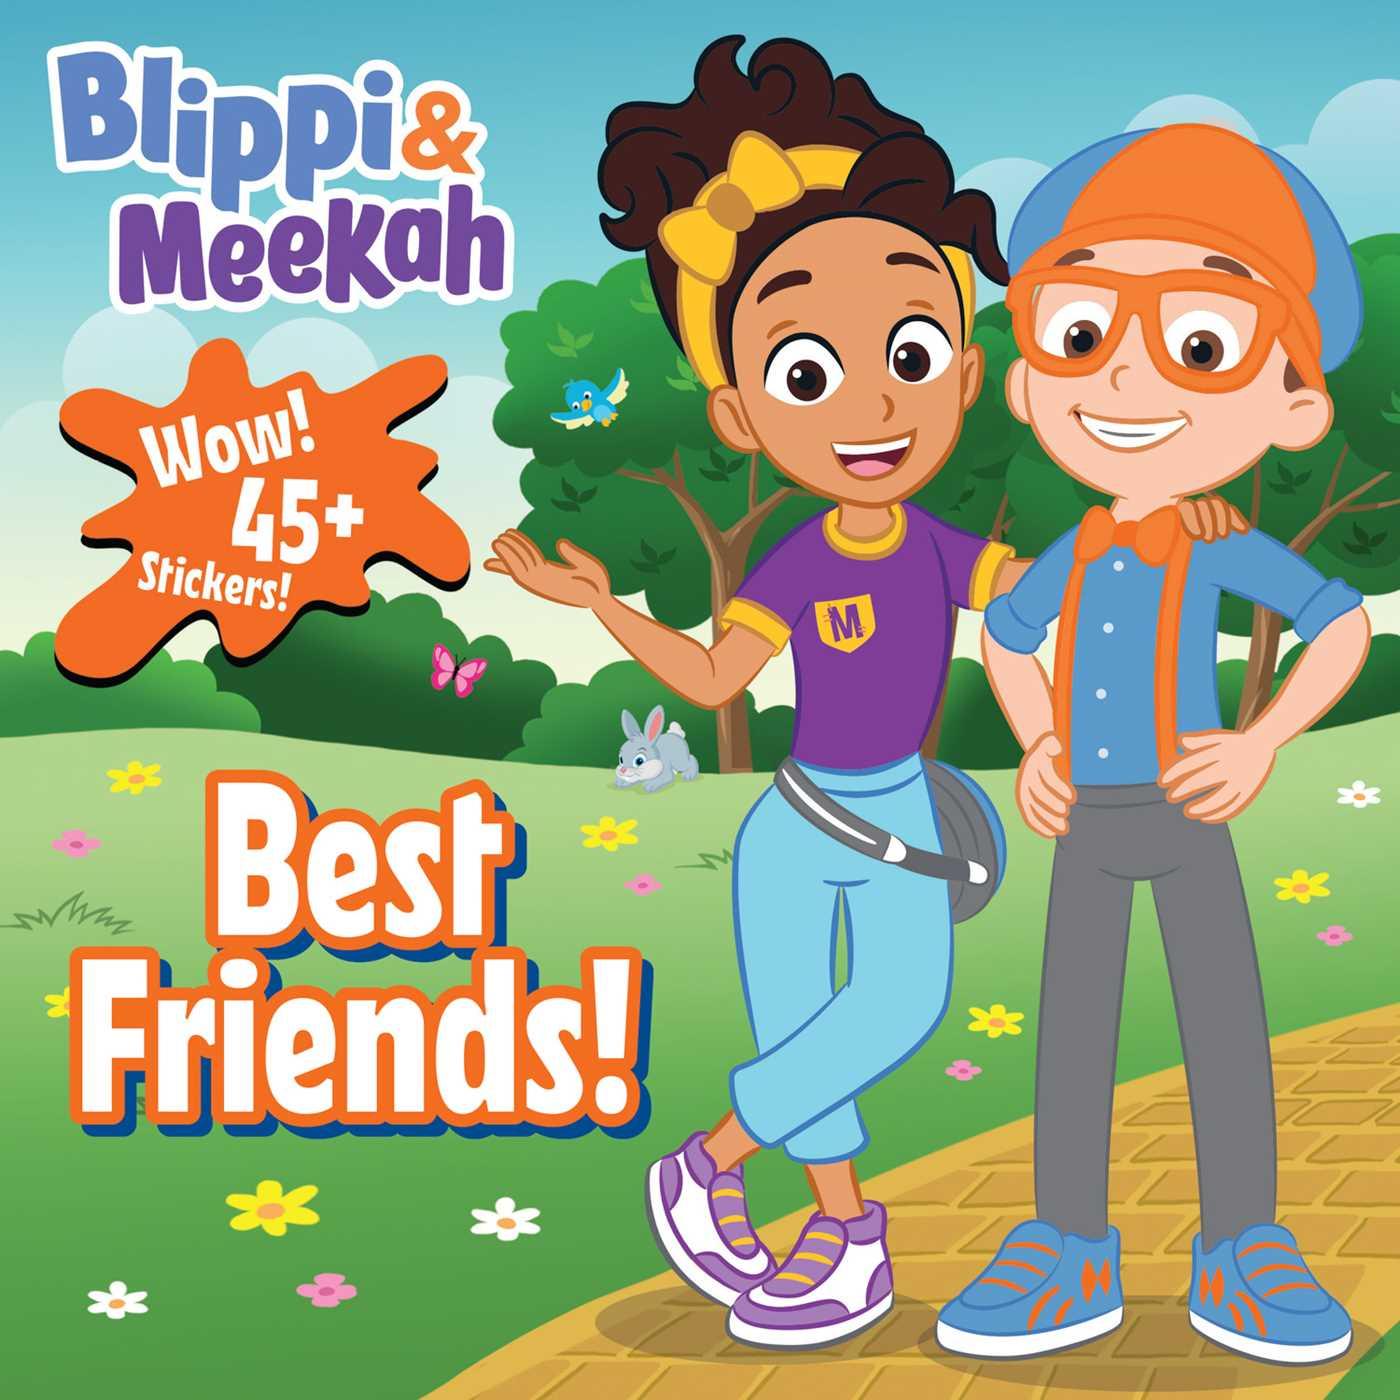 Carte Blippi: Blippi and Meekah Best-Friends 